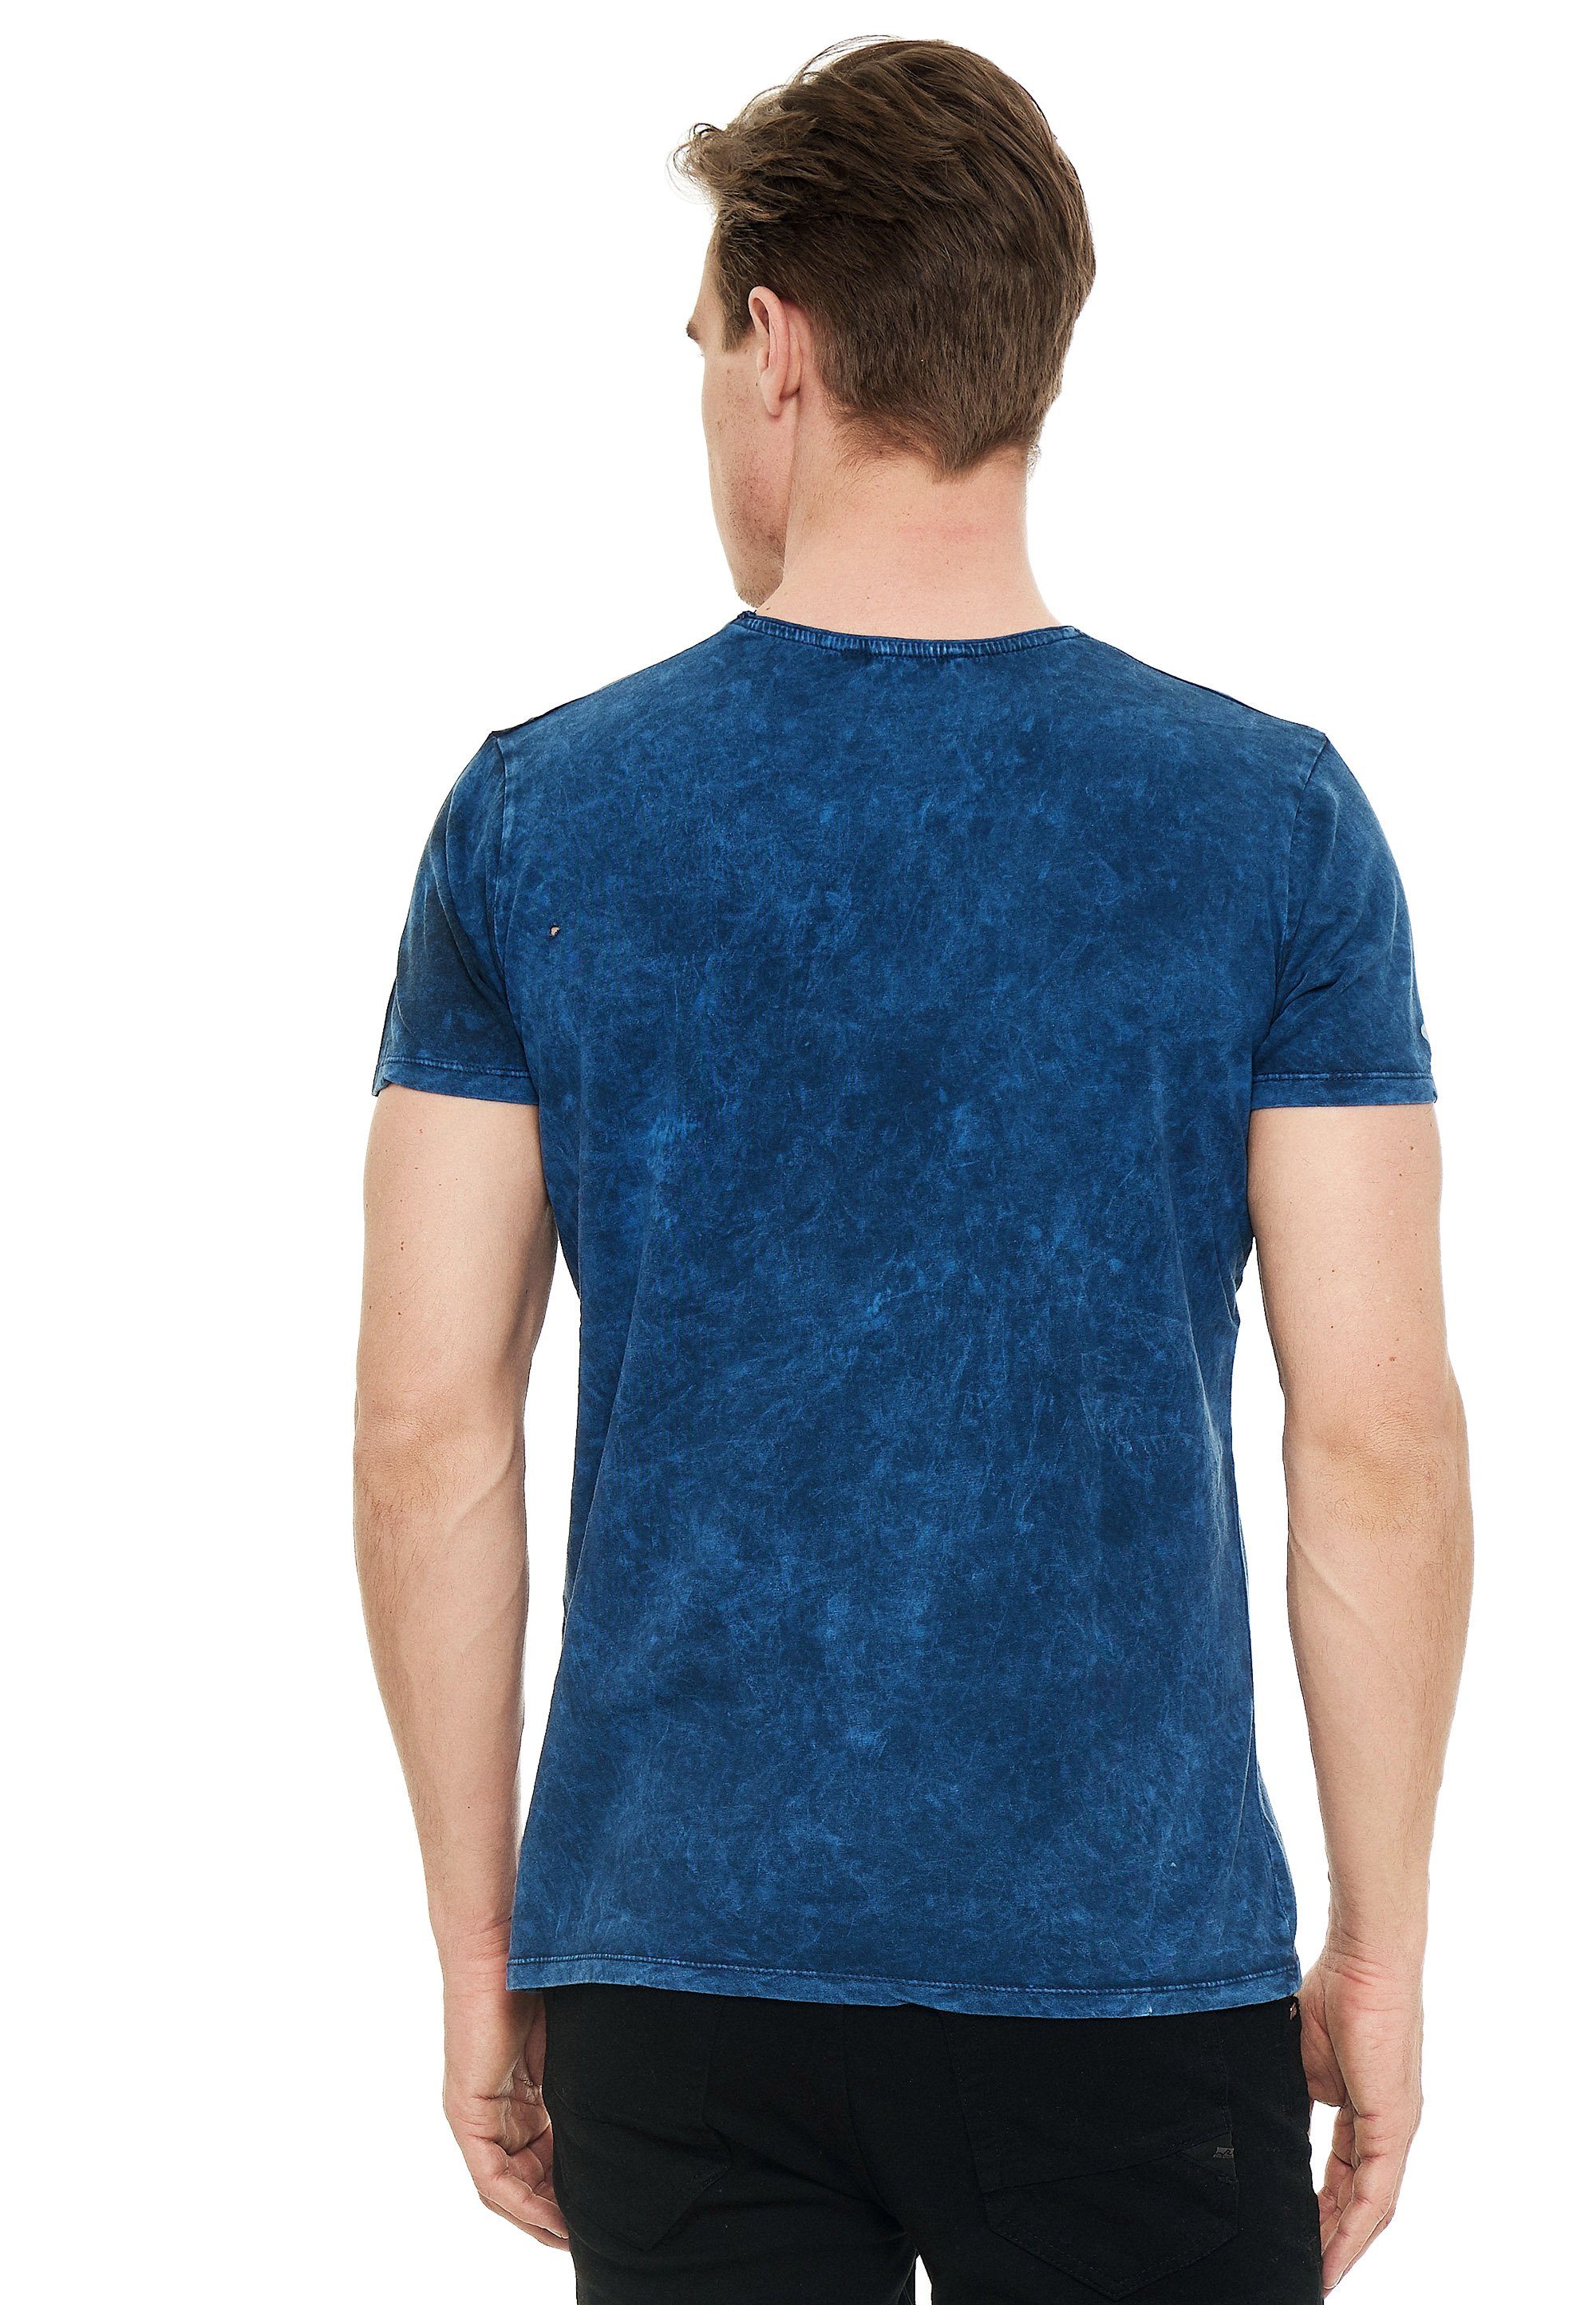 eindrucksvollem blau T-Shirt Print Rusty Neal mit